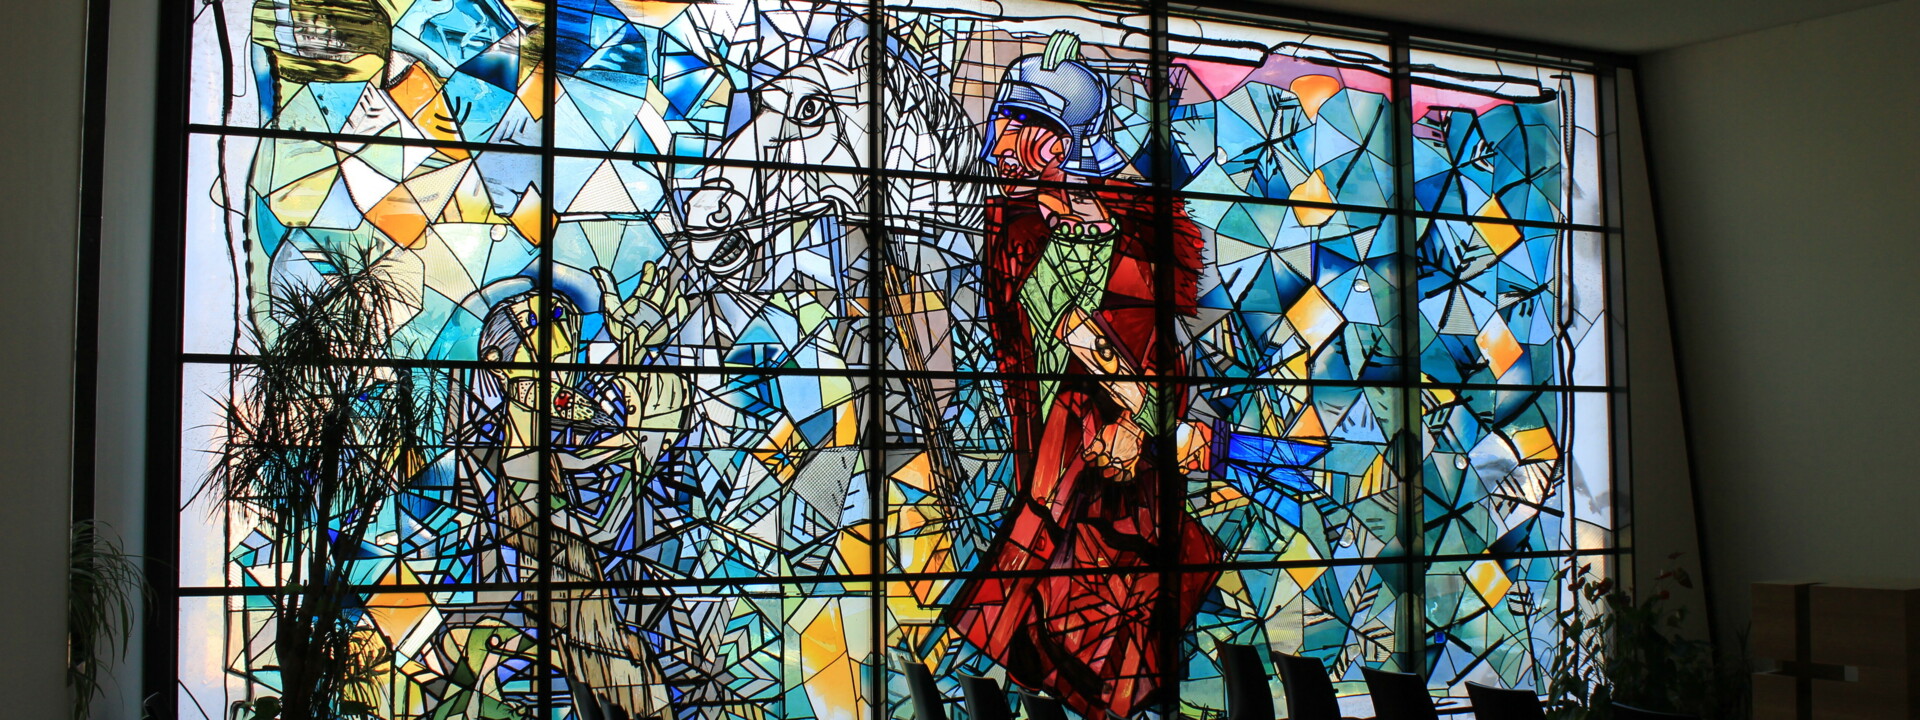 Glasmalerei in der Kapelle St. Martin mit Reihenbestuhlung ©Koblenz-Touristik GmbH